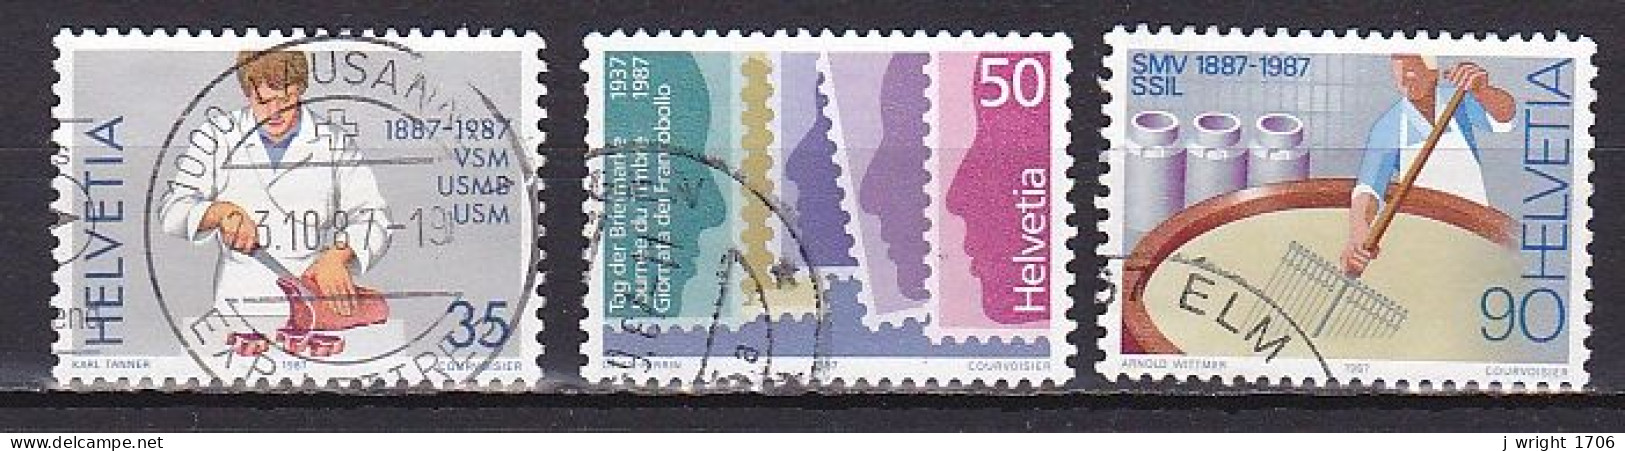 Switzerland, 1987, Stamp Day & Publicity Issue, Set, USED - Gebraucht